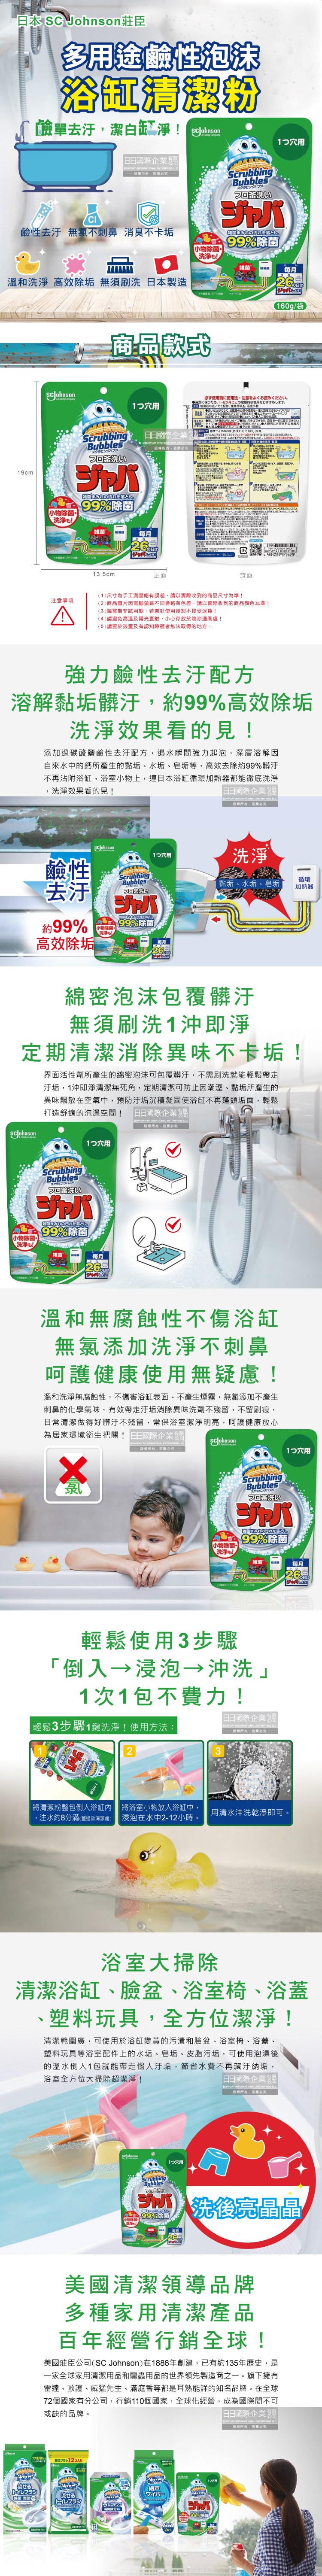 (清潔-浴缸)日本SC Johnson莊臣-浴缸清潔粉160g袋裝介紹圖